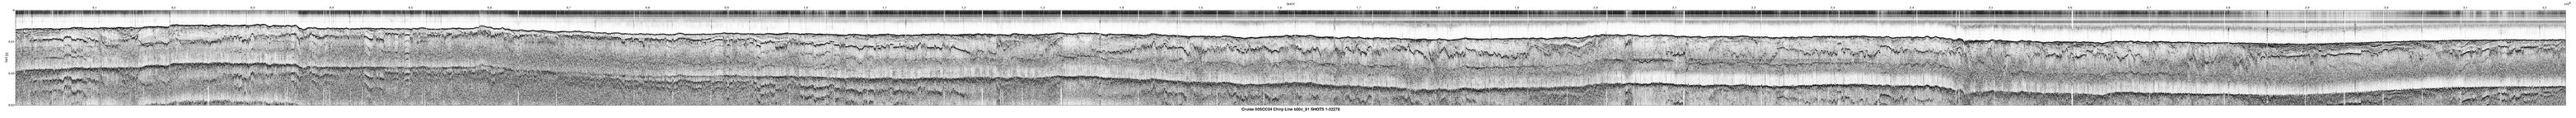 00SCC04 b00c_91 seismic profile image